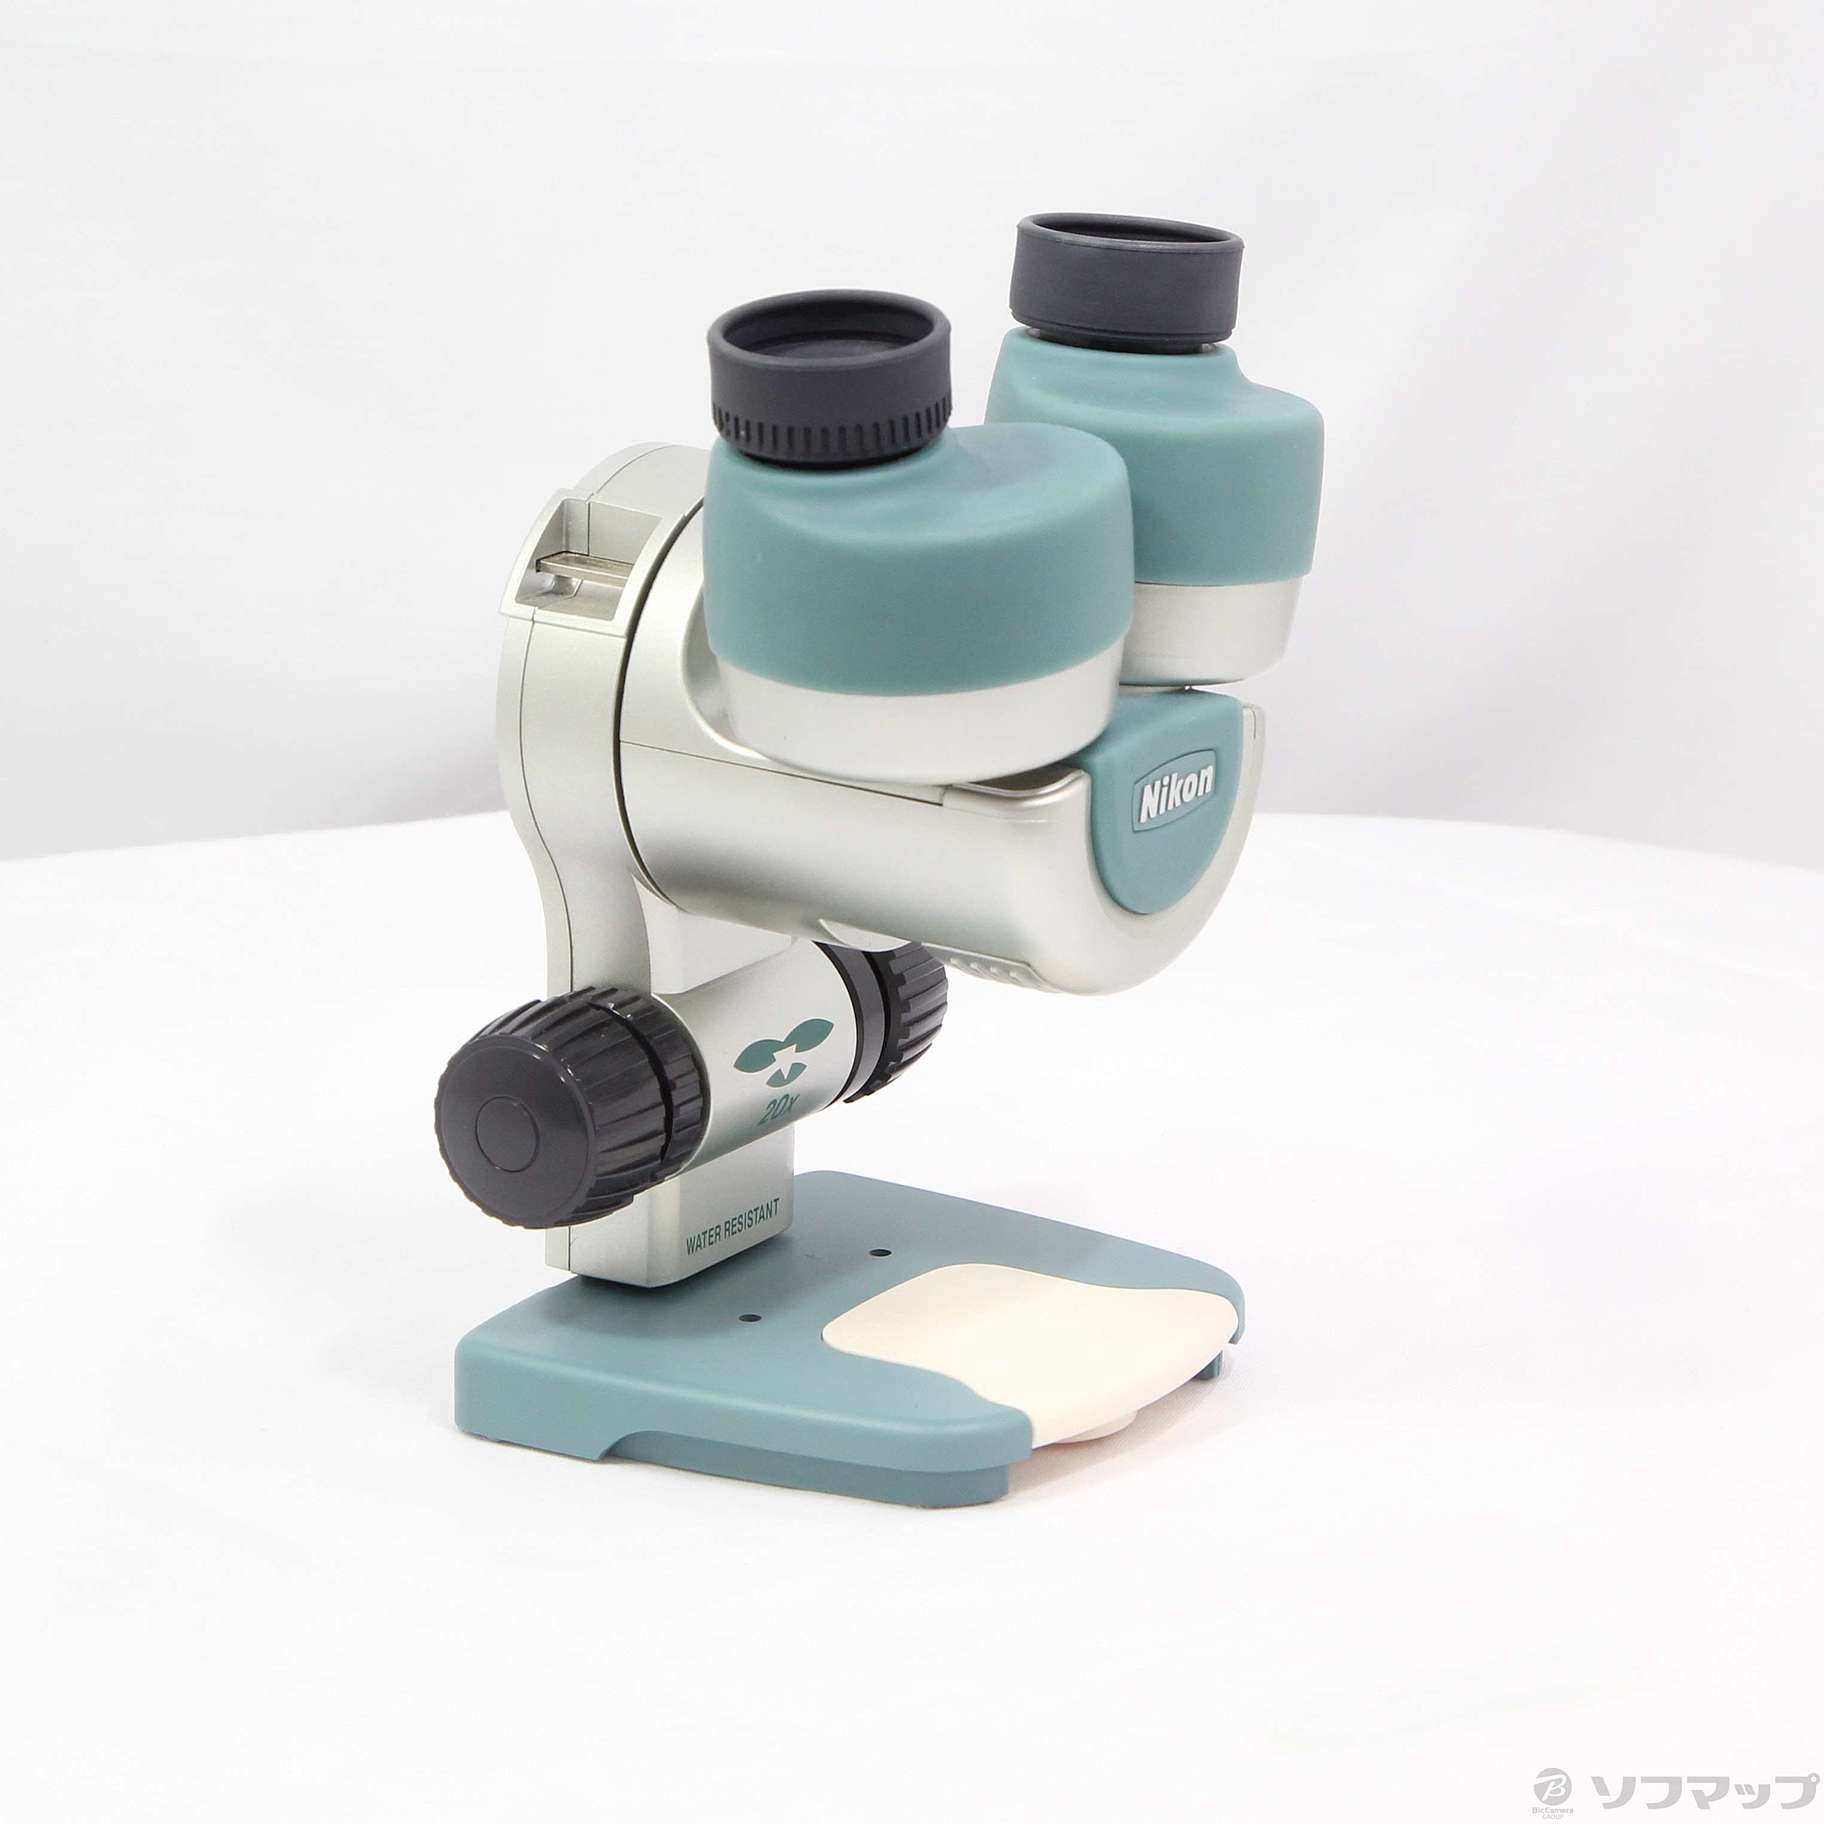 〔展示品〕 ファーブル ミニ ネイチャースコープ 双眼実体顕微鏡